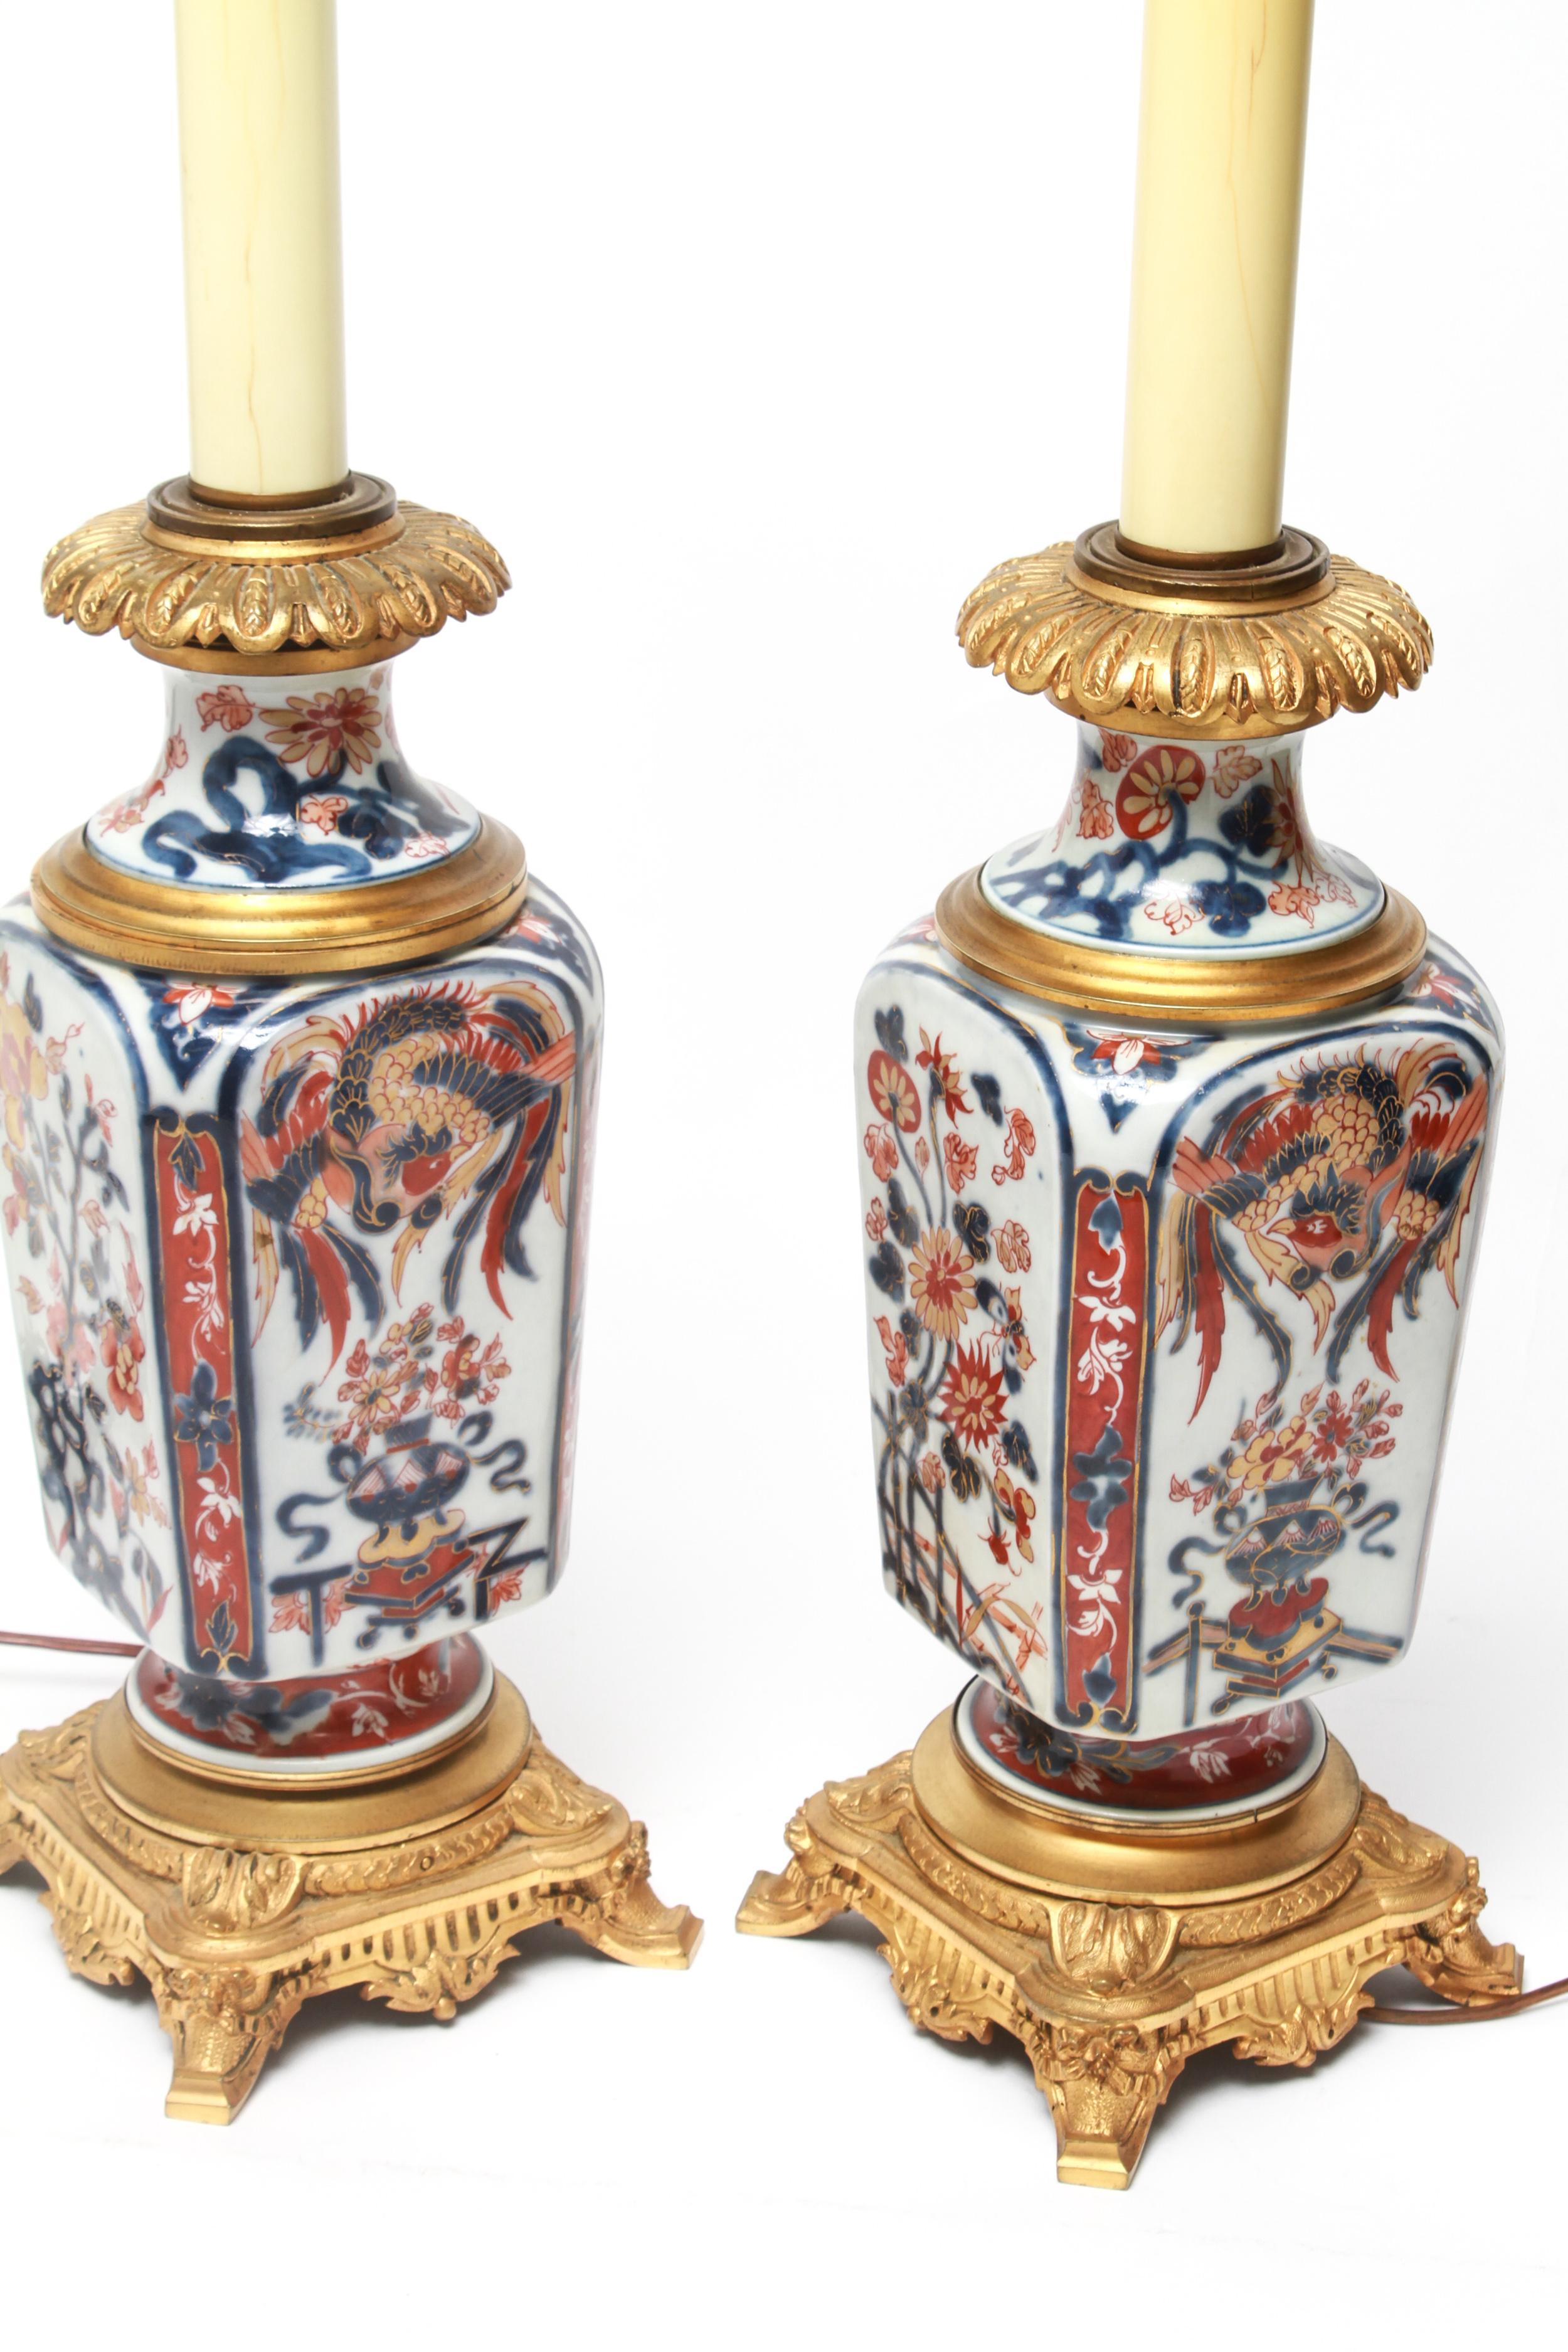 Japonisme Japanese Imari Style Porcelain Table Lamps with Phoenix Motif